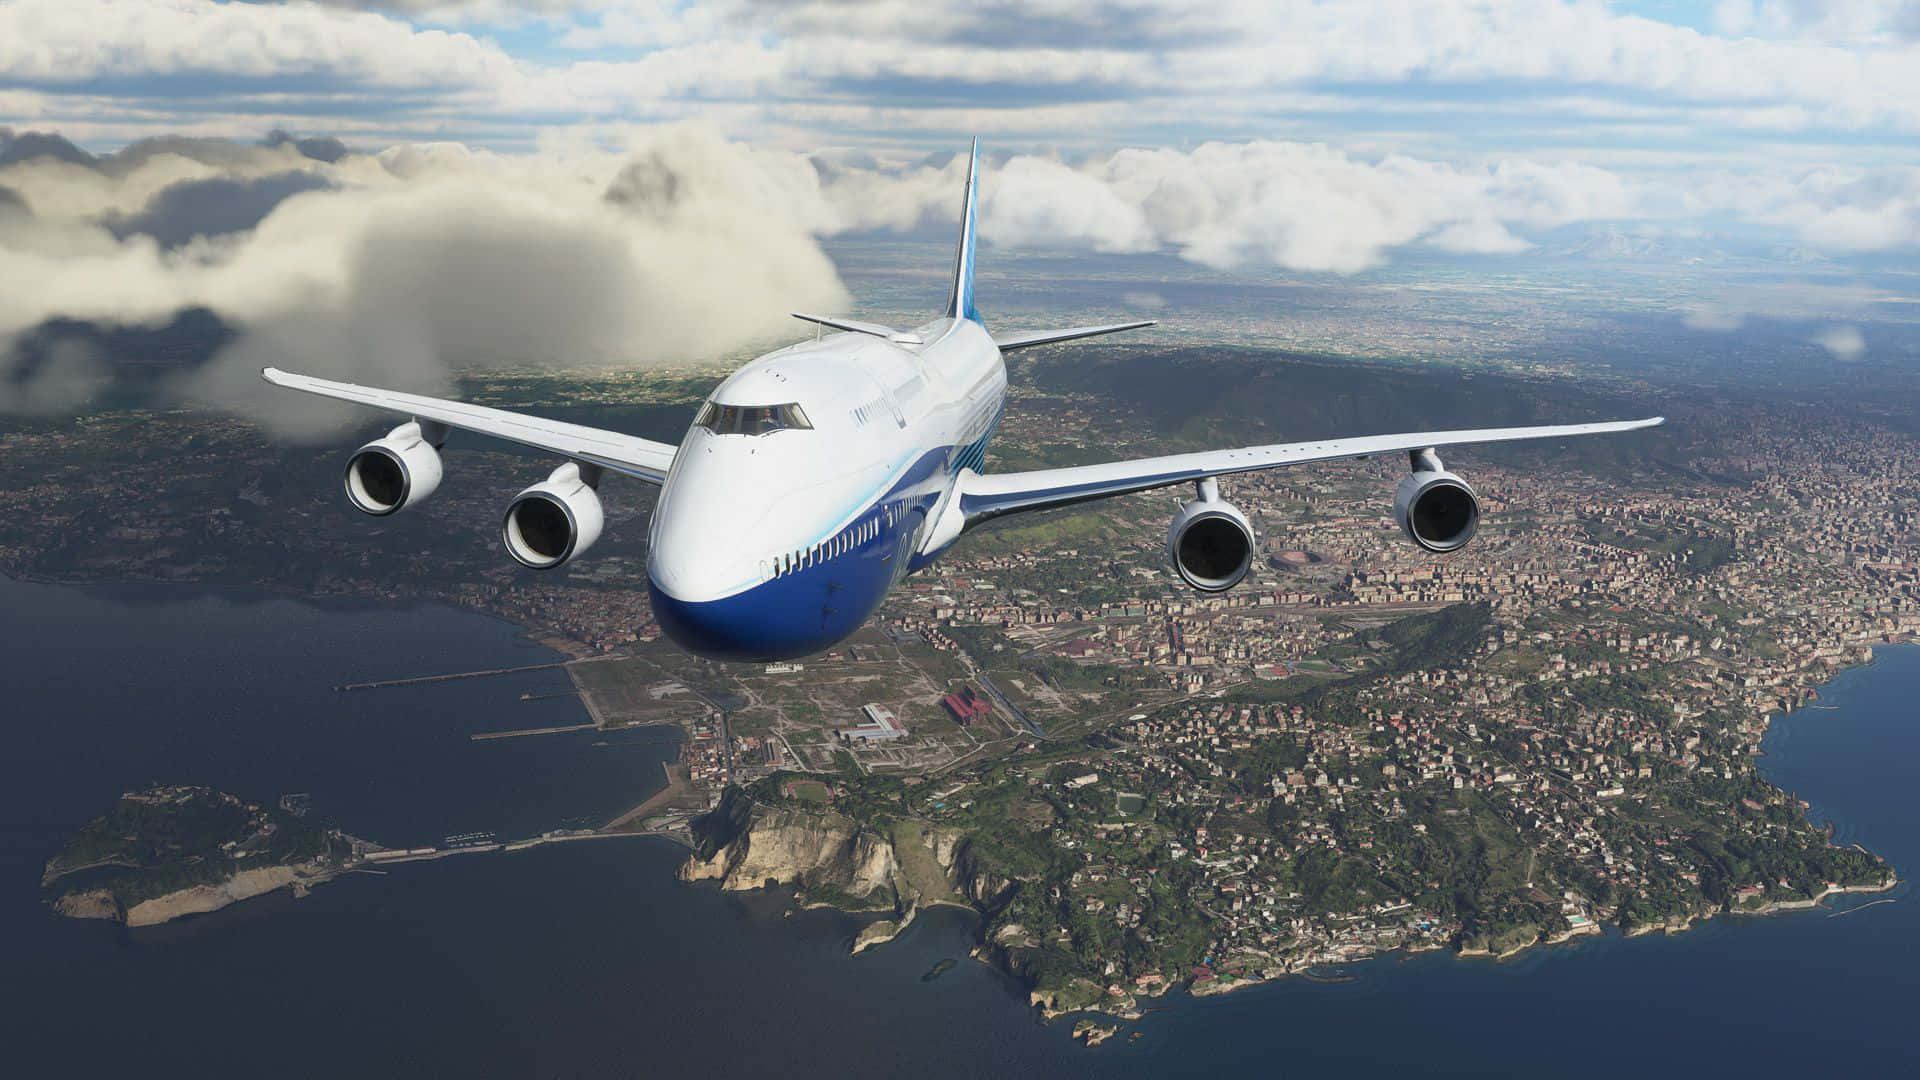 Dievirtuellen Weiten Des Himmels Mit Dem Microsoft Flight Simulator Genießen